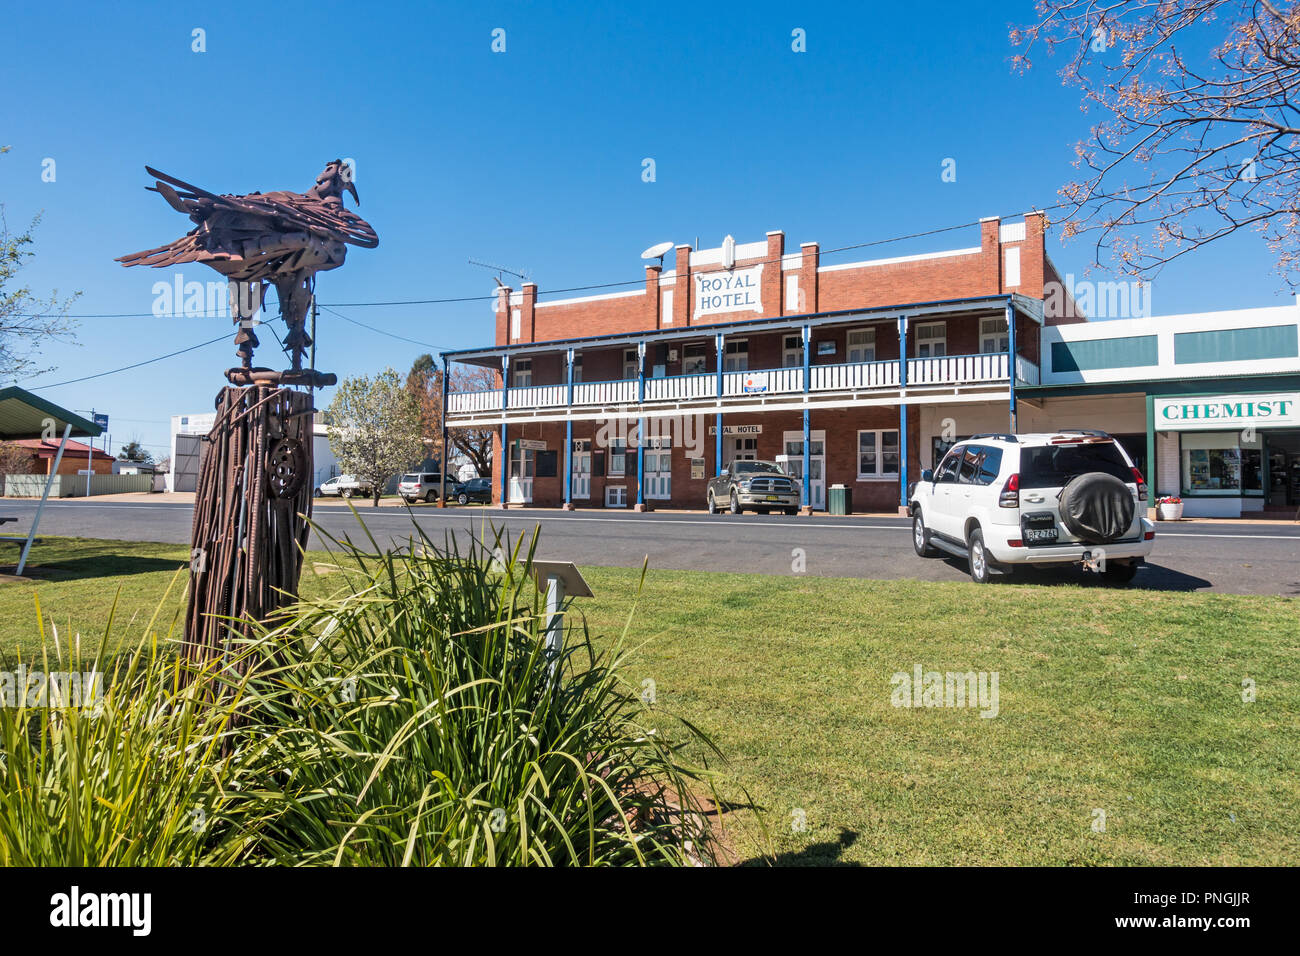 Royal Hotel,Dunedoo, Central West Wales Australia con la scultura di metallo di un aquila in primo piano. Foto Stock